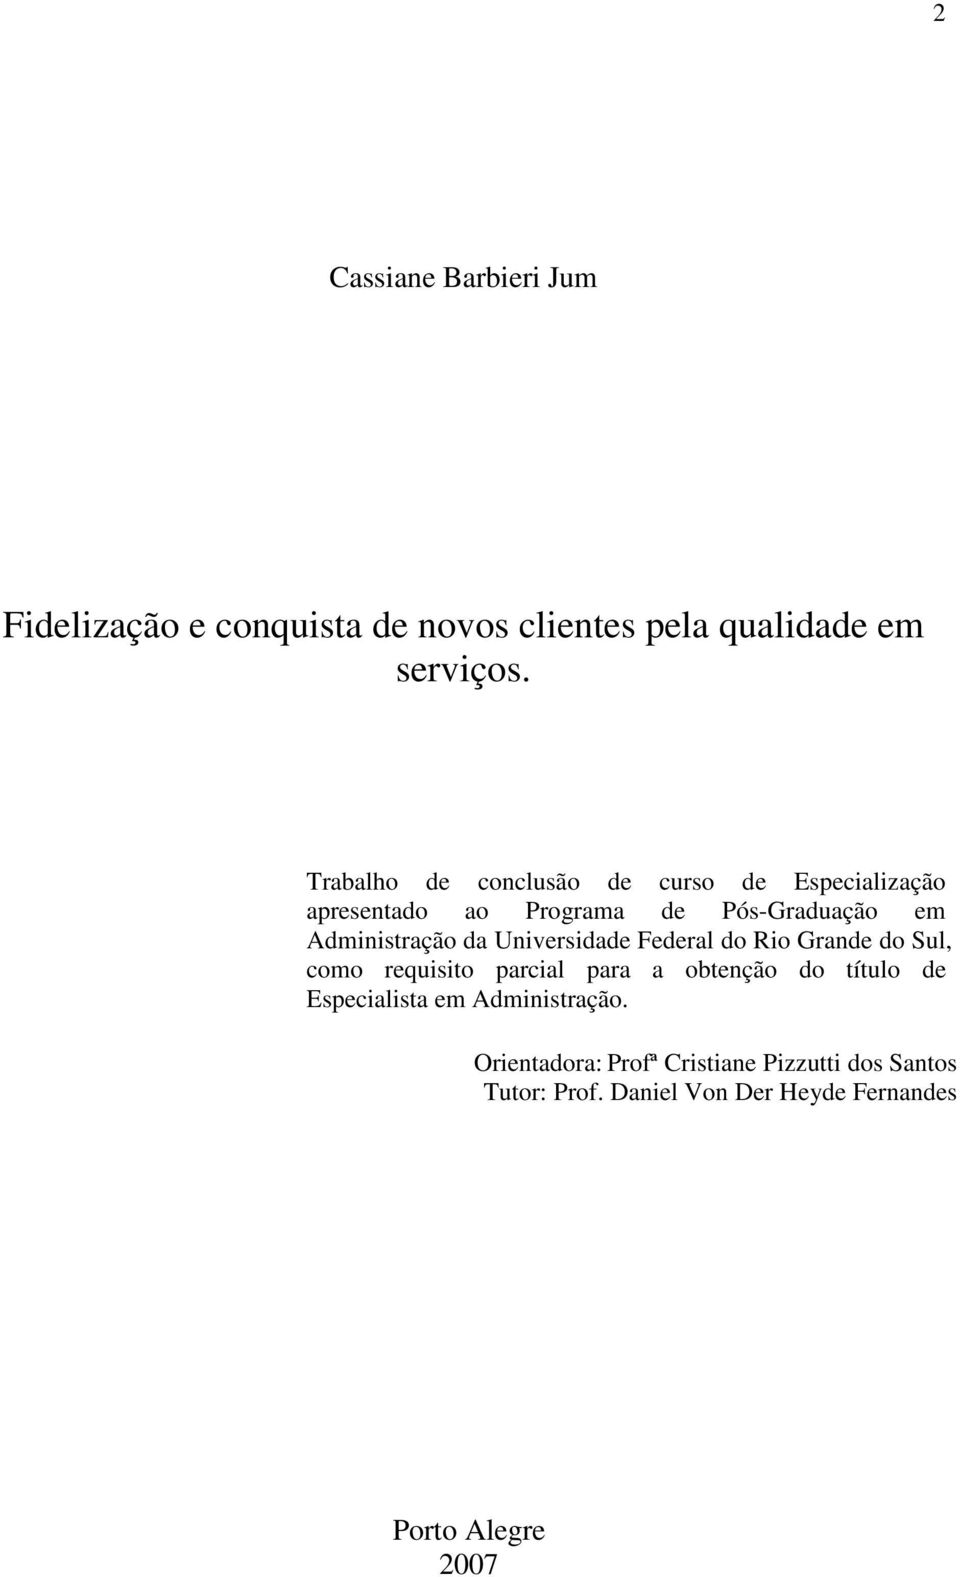 Universidade Federal do Rio Grande do Sul, como requisito parcial para a obtenção do título de Especialista